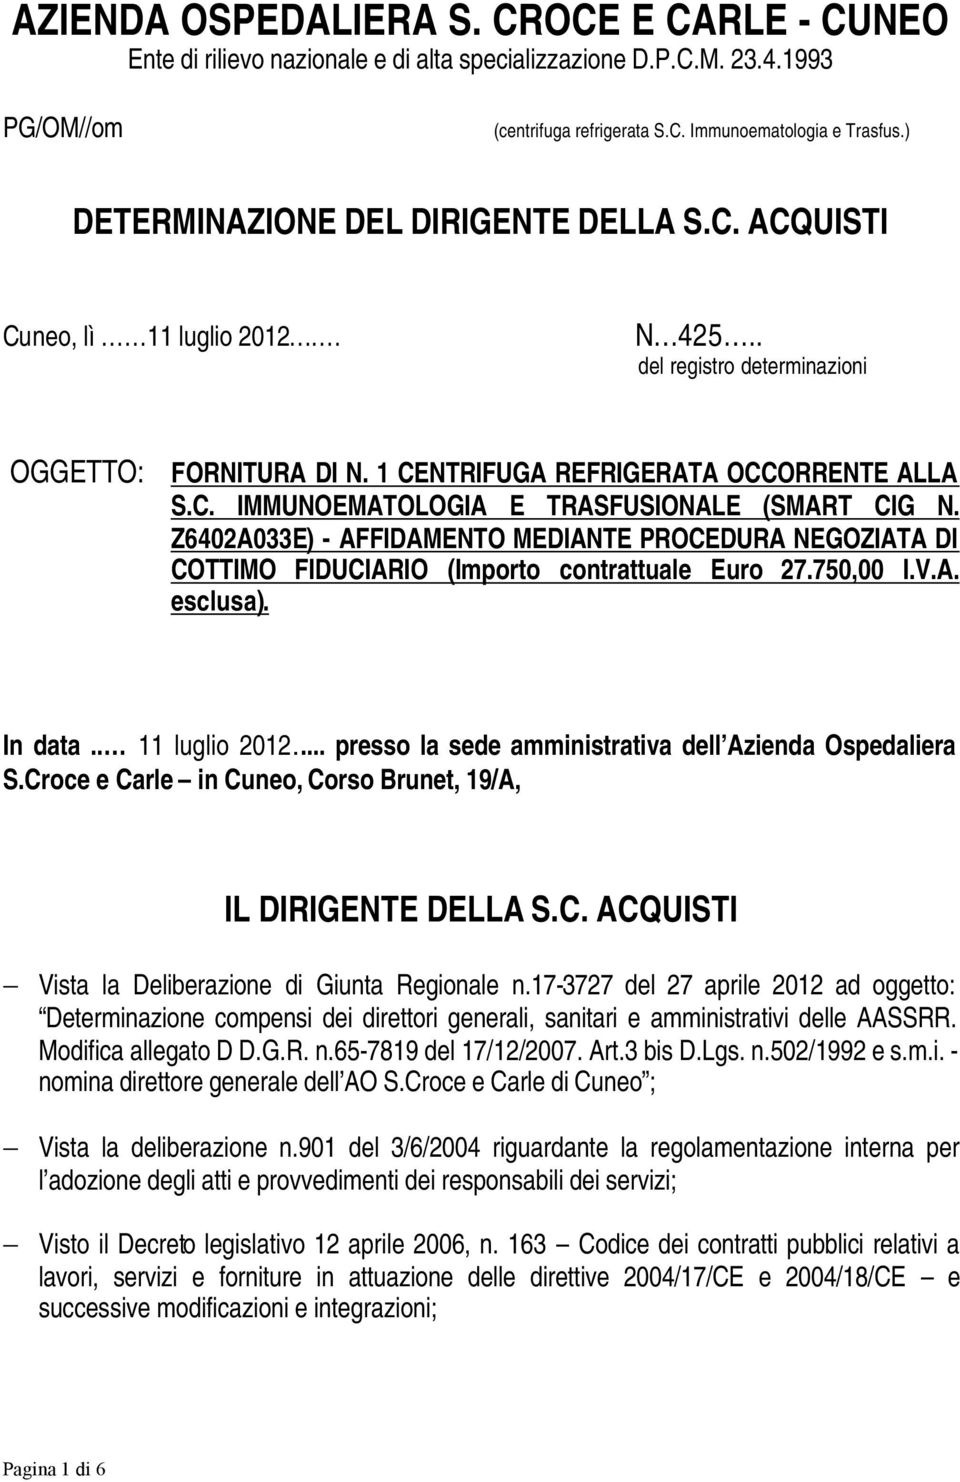 Z6402A033E) - AFFIDAMENTO MEDIANTE PROCEDURA NEGOZIATA DI COTTIMO FIDUCIARIO (Importo contrattuale Euro 27.750,00 I.V.A. esclusa). In data.. 11 luglio 2012.